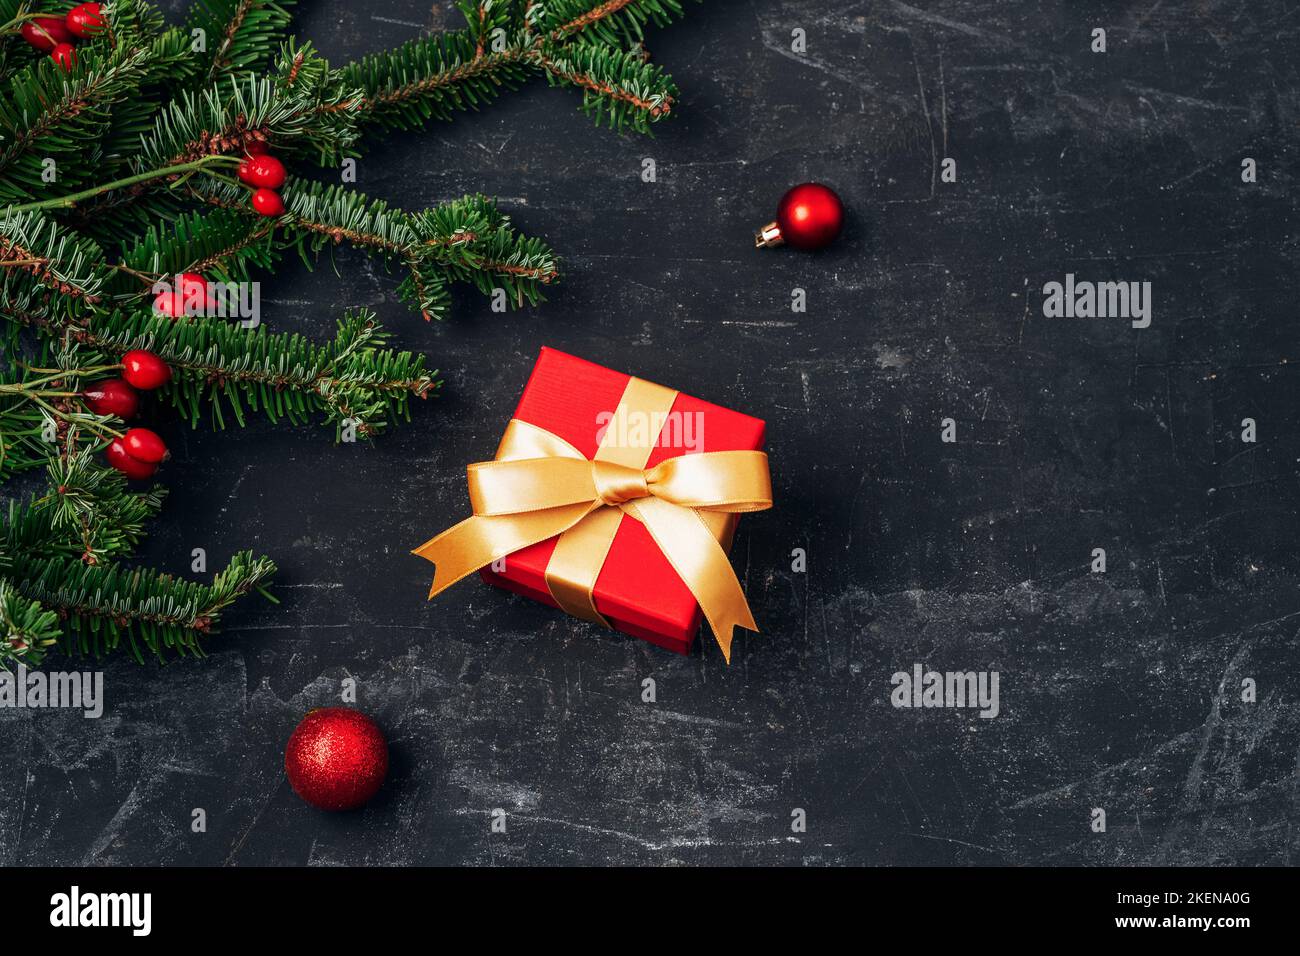 Scatola regalo rossa e rami di abete con decorazioni natalizie su tavola testurizzata nera. Concetto di vacanza invernale. Vista dall'alto, disposizione piatta. Foto Stock